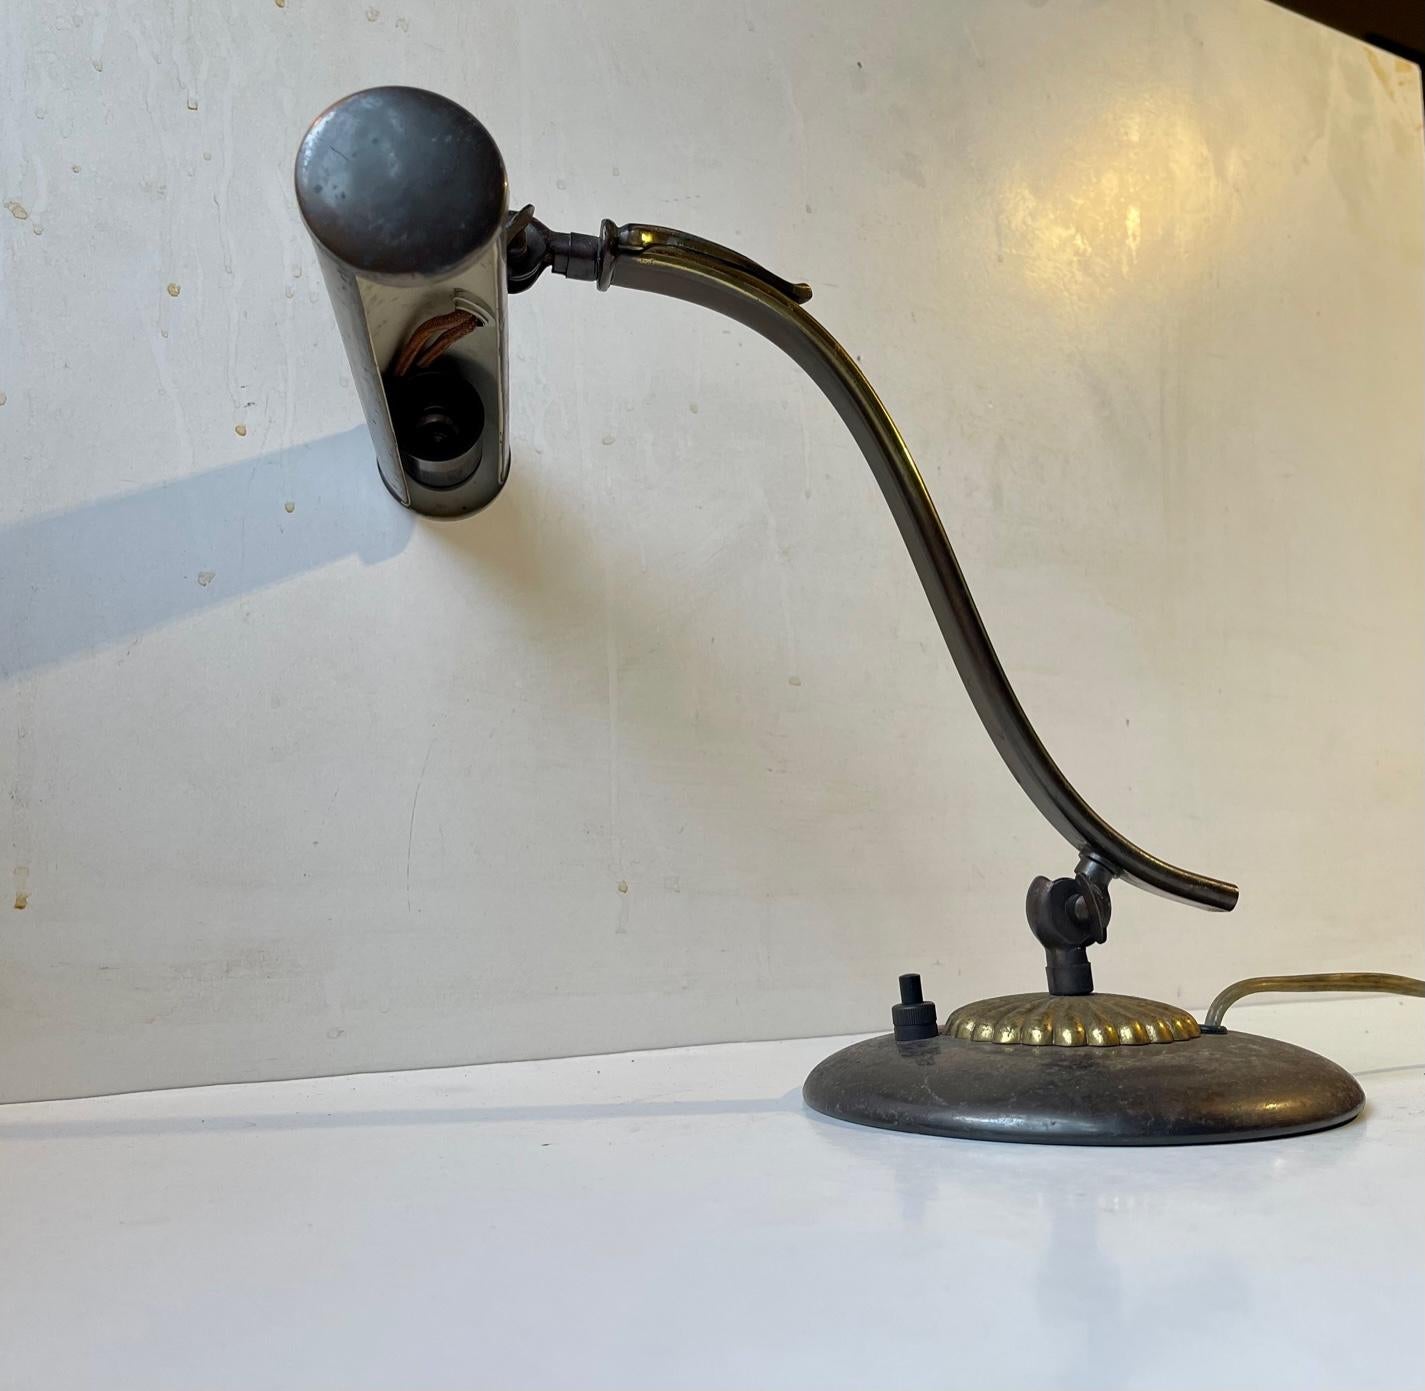 Lampe de piano réglable avec abat-jour tubulaire classique. Il est en laiton et partiellement patiné. Fabriqué en Scandinavie, probablement au Danemark vers 1930-40. En état de marche. Dimensions : H : 28 cm, Abat-jour : 20x4,5 cm. La base a un